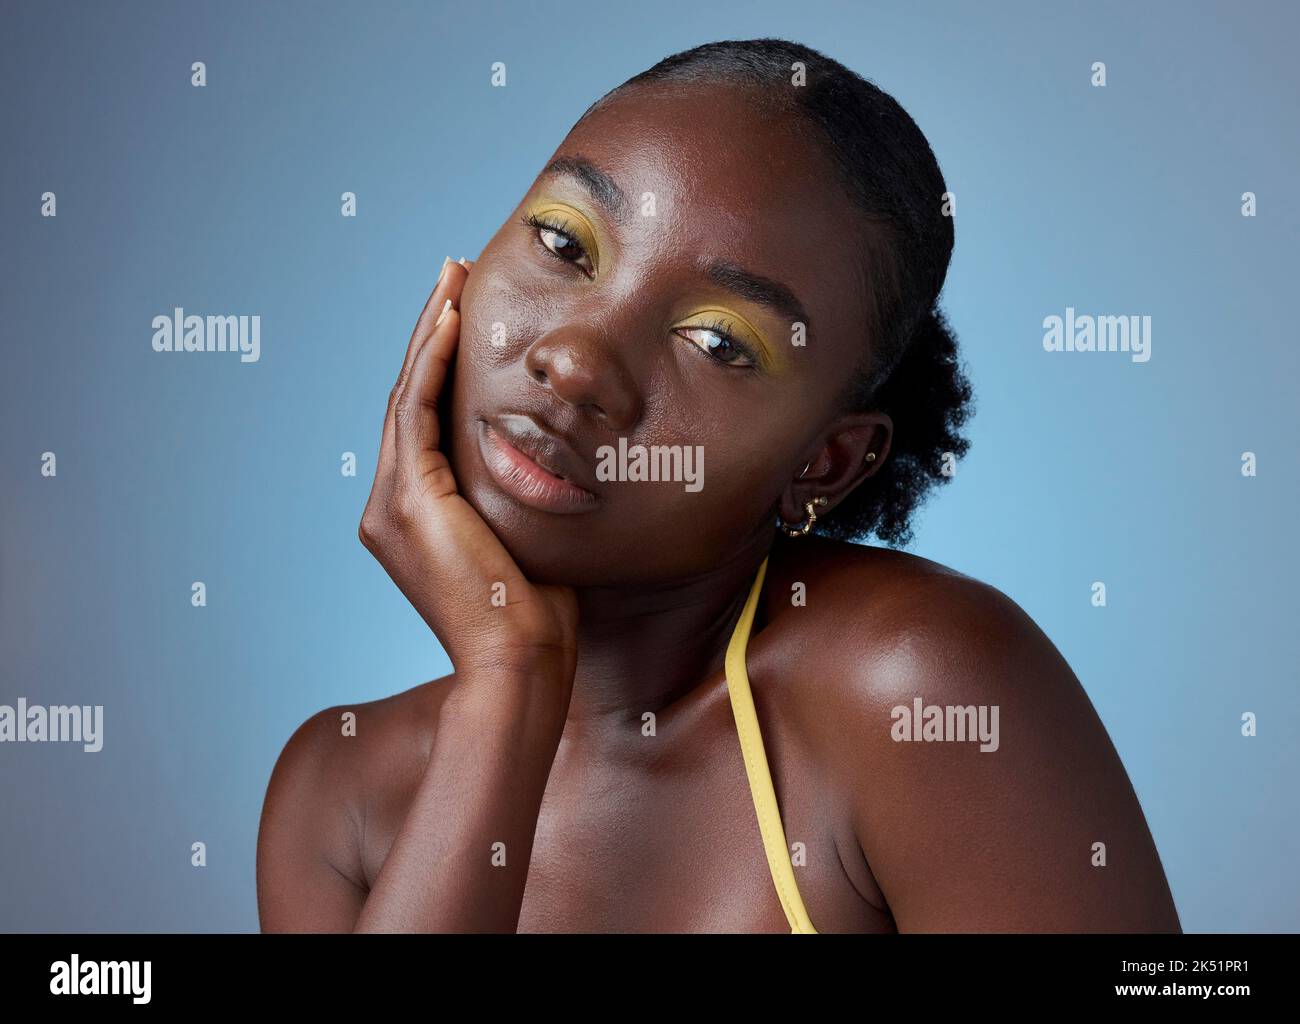 Trucco viso, ritratto creativo e donna nera con luce da cosmetici su uno sfondo blu mockup studio. Modello africano con bellezza da Foto Stock